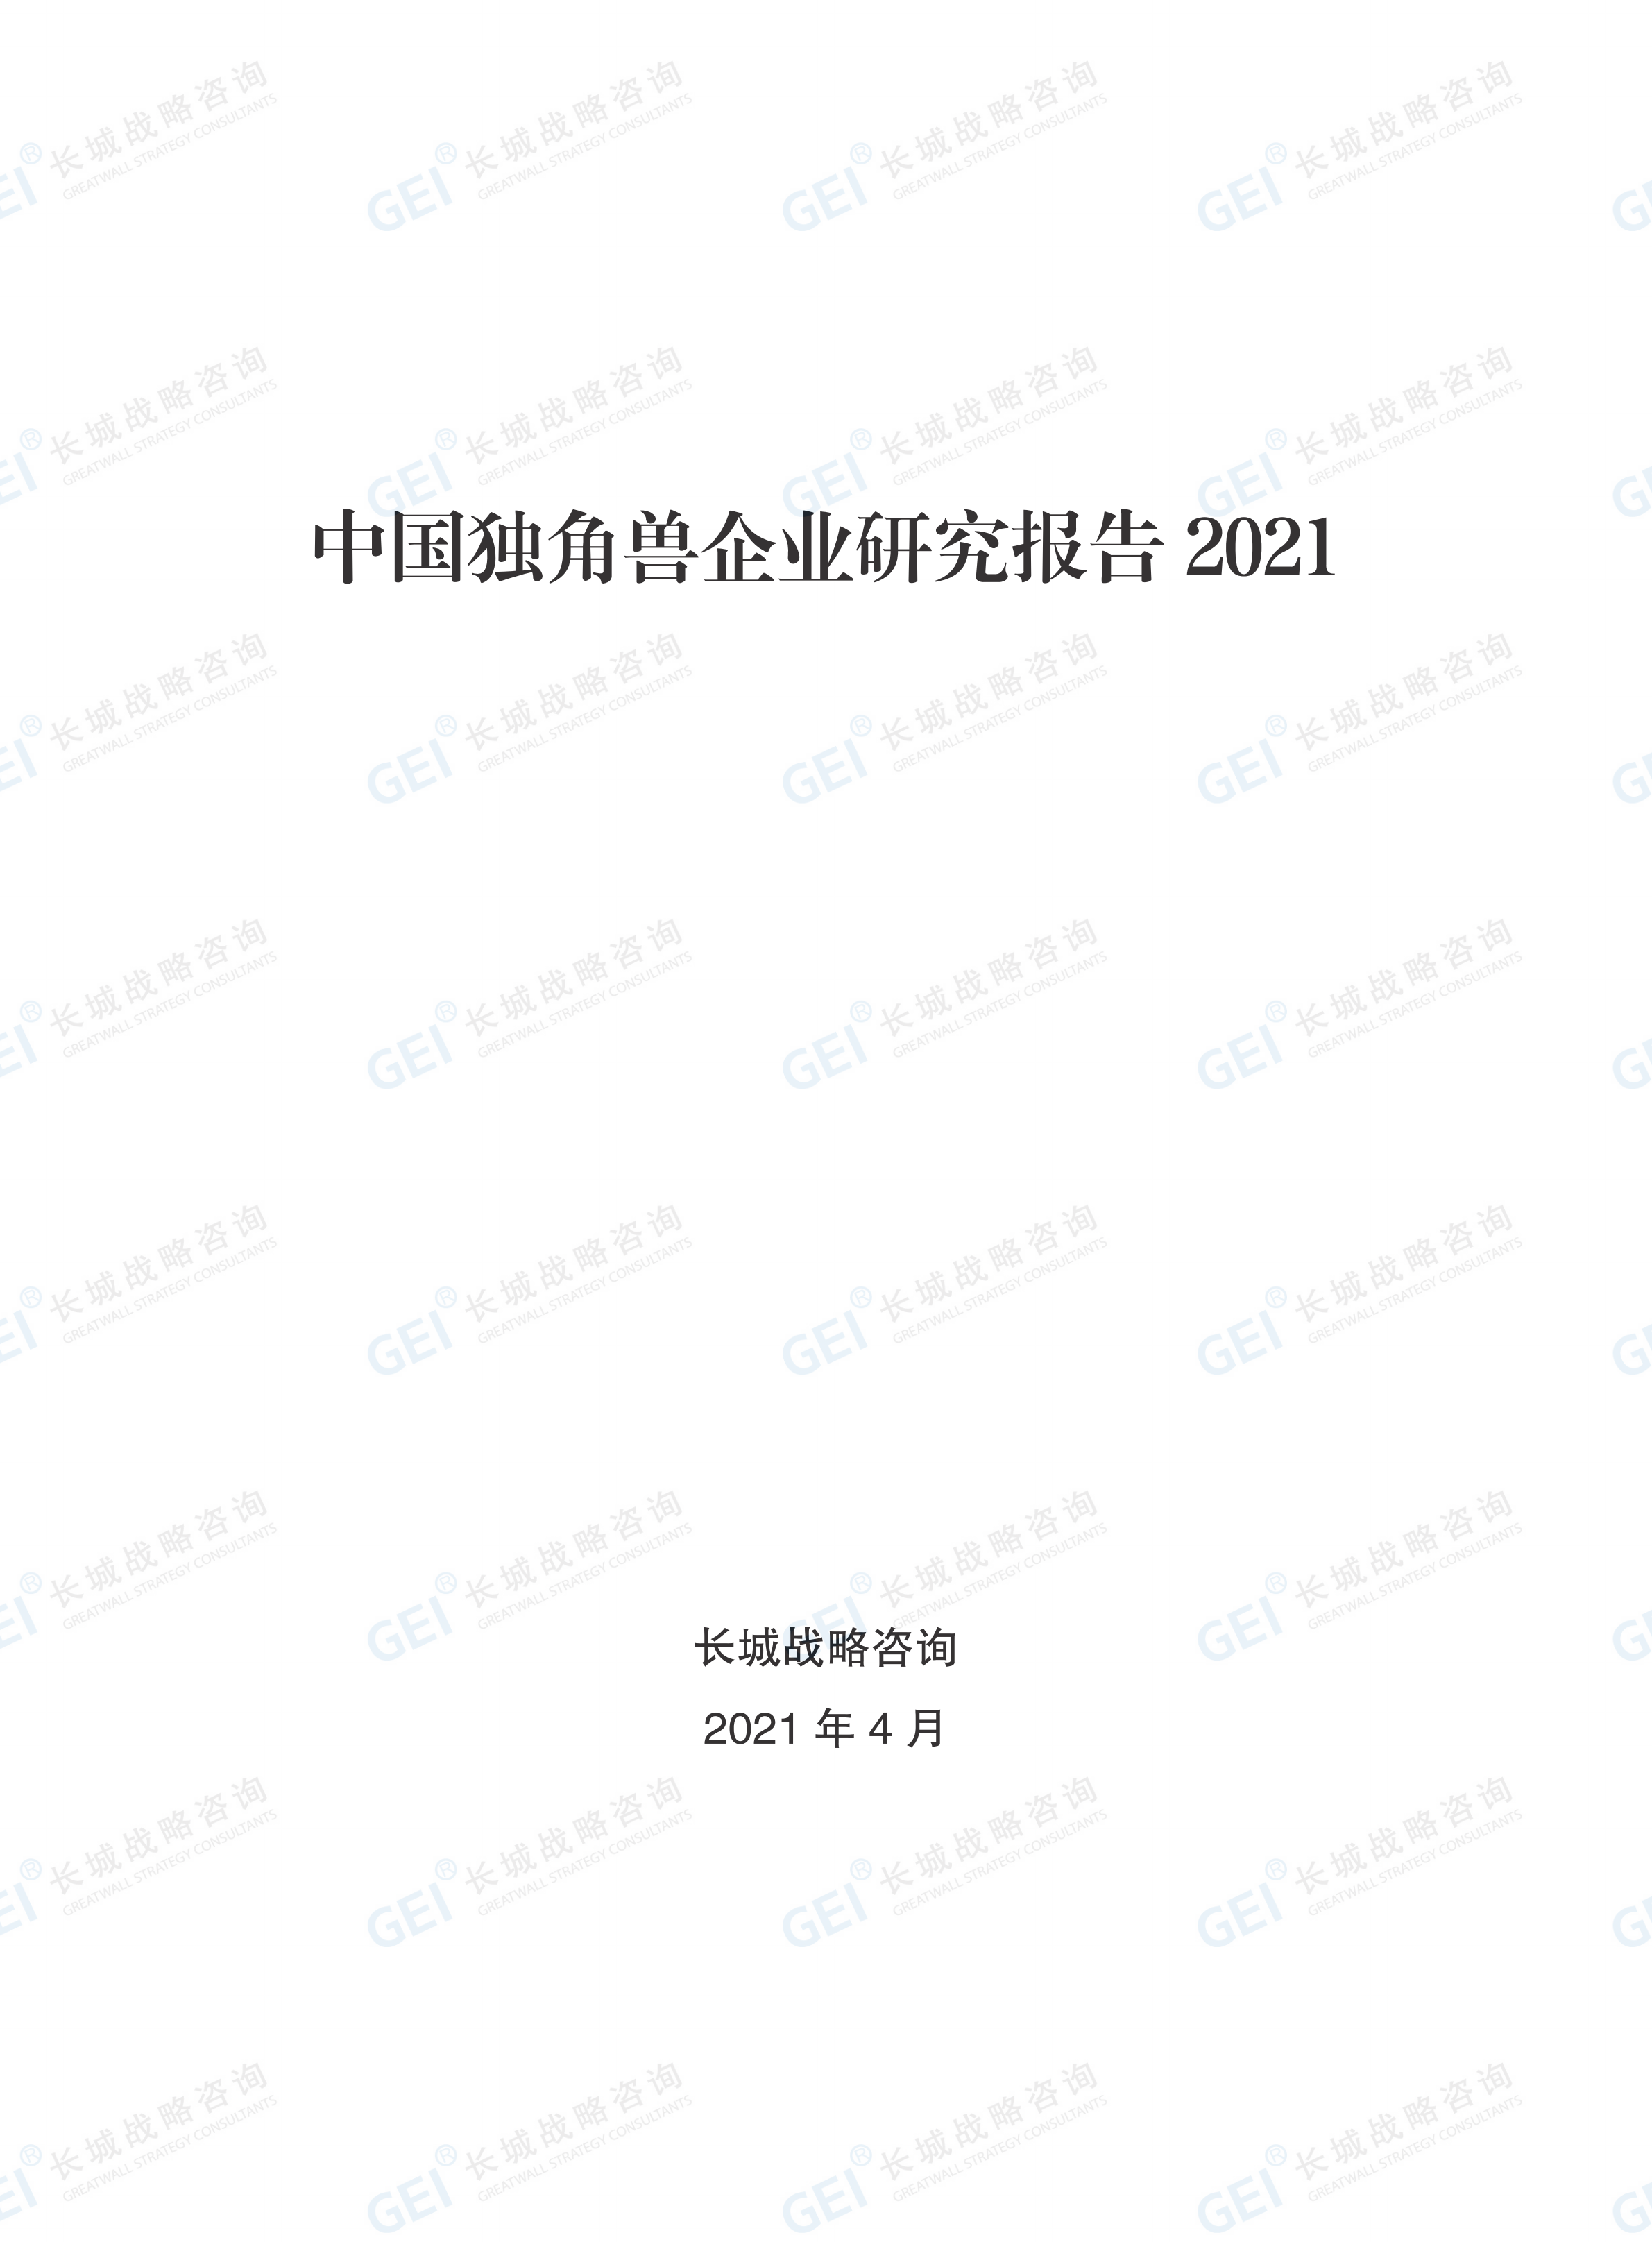 中国独角兽企业研究报告2021-水印(1)_01.png